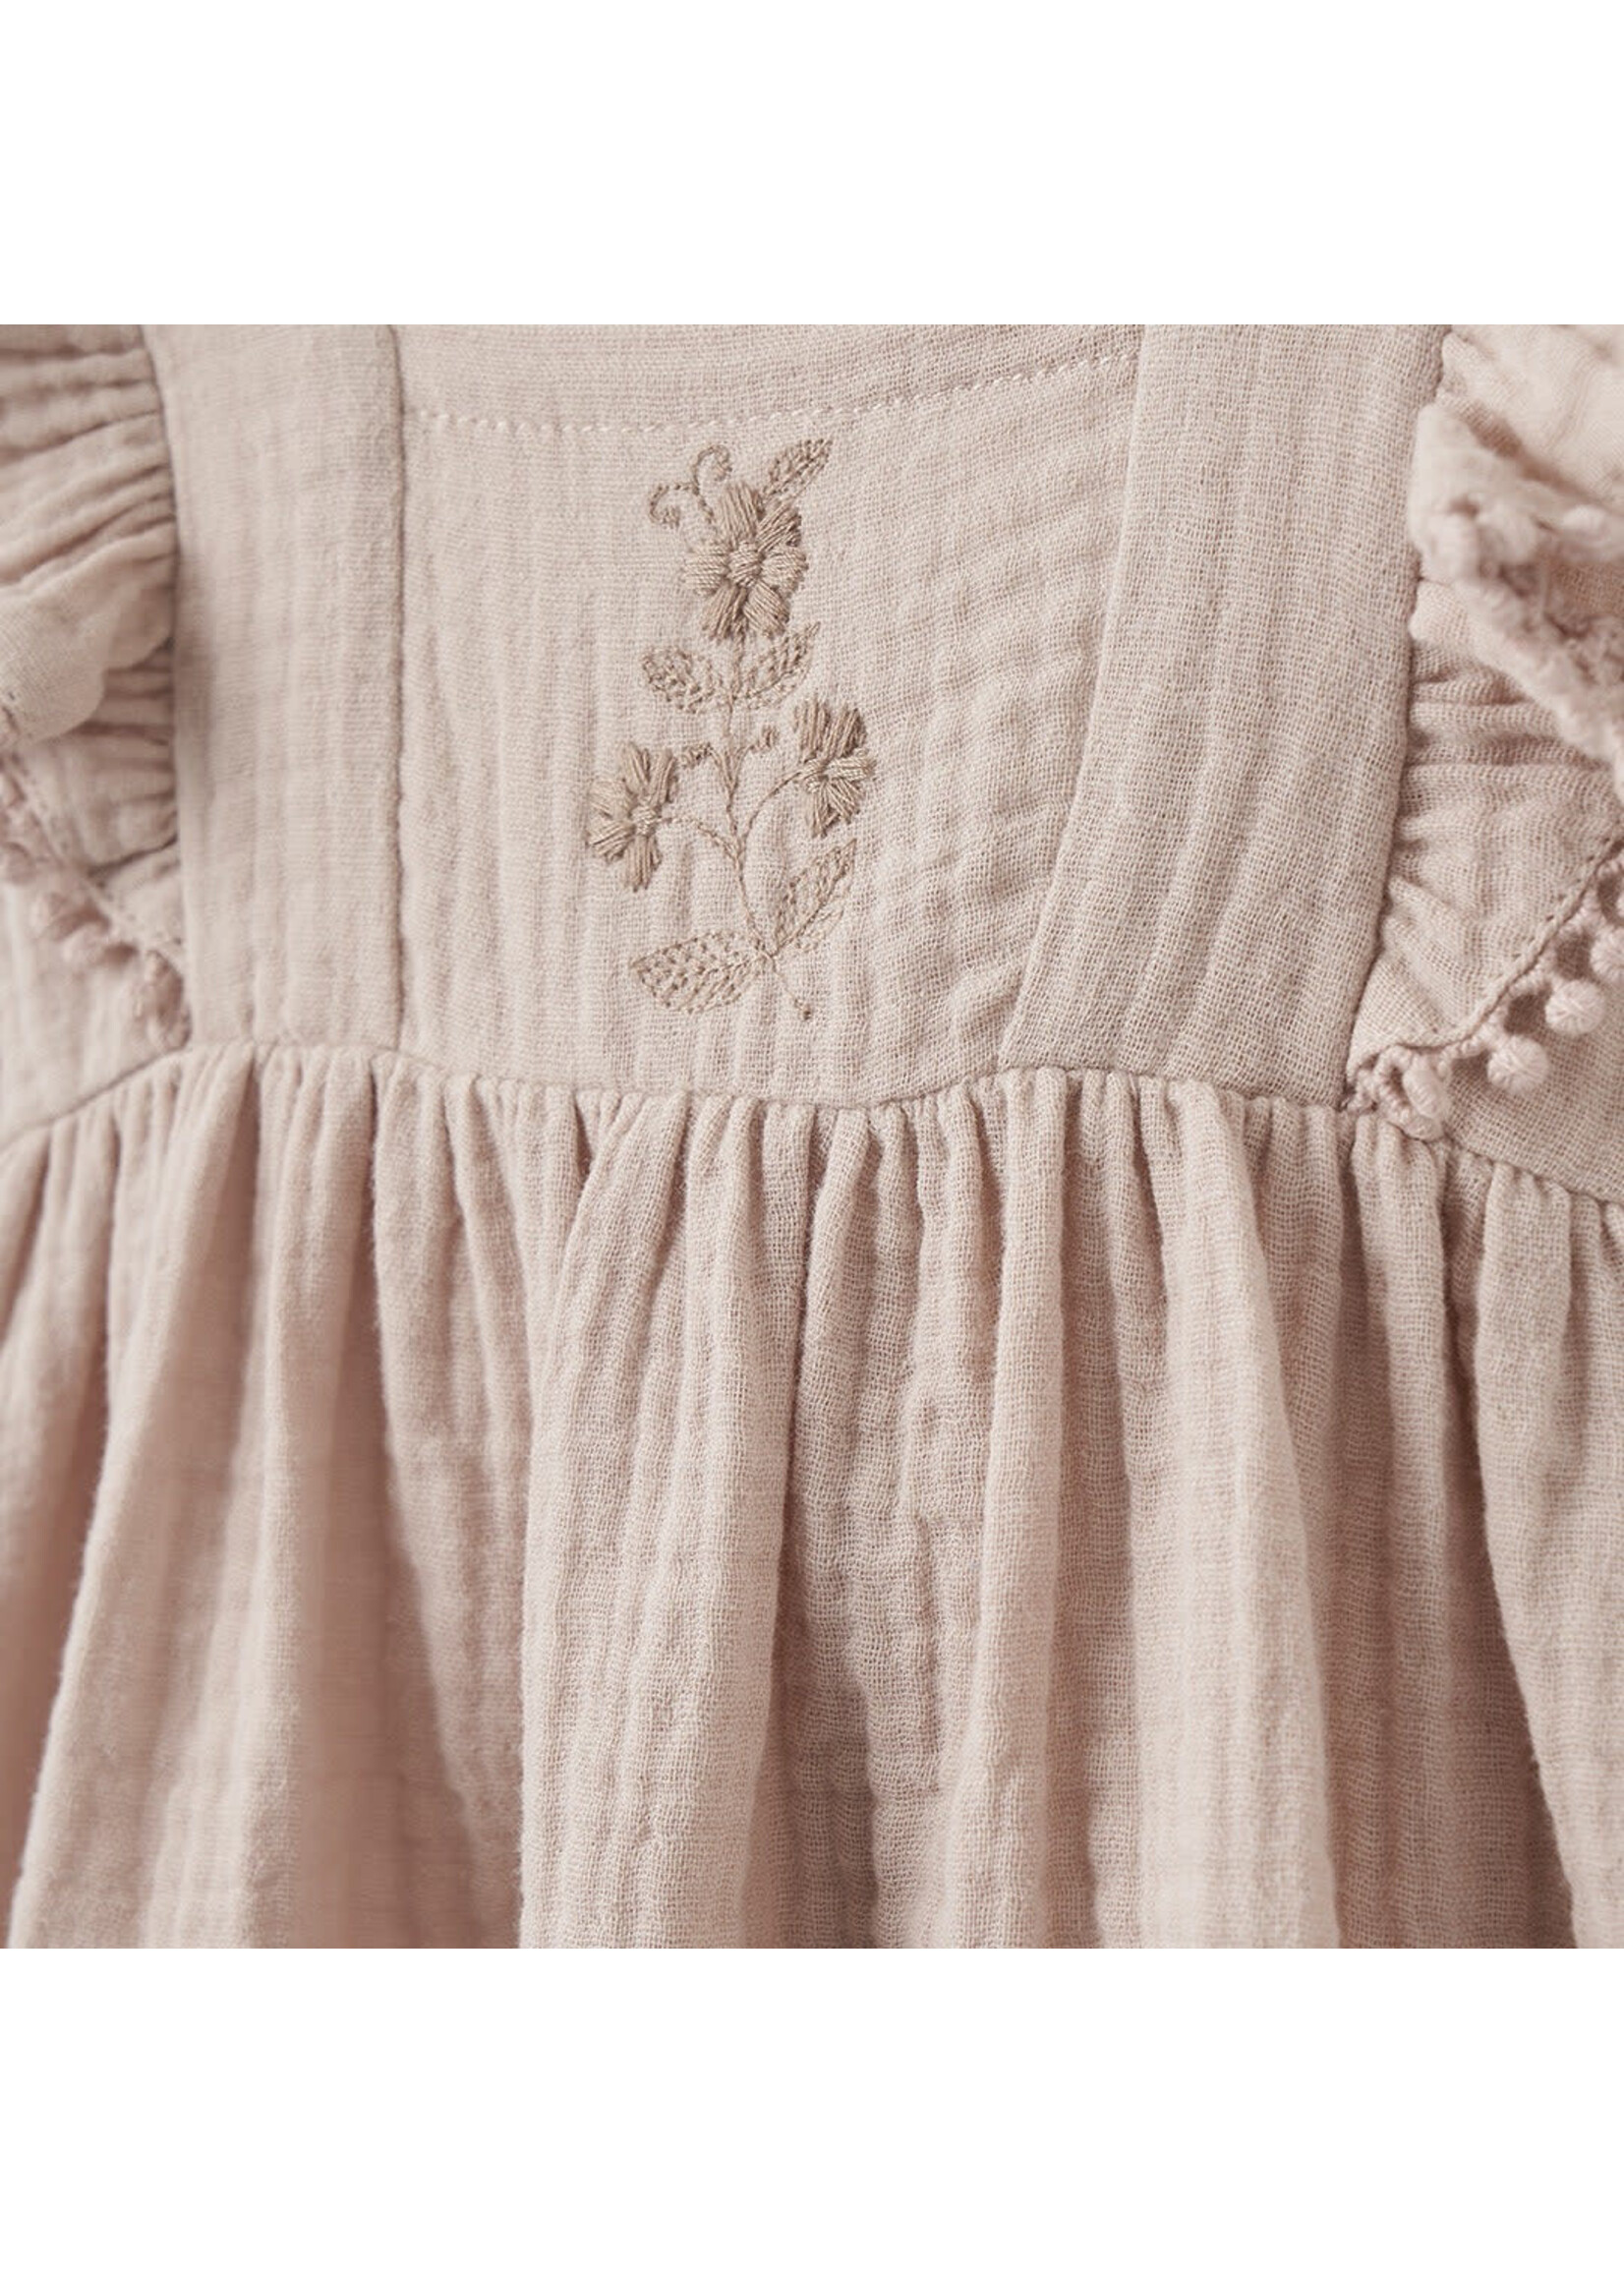 Embroidered Flutter Dress Set - Taupe